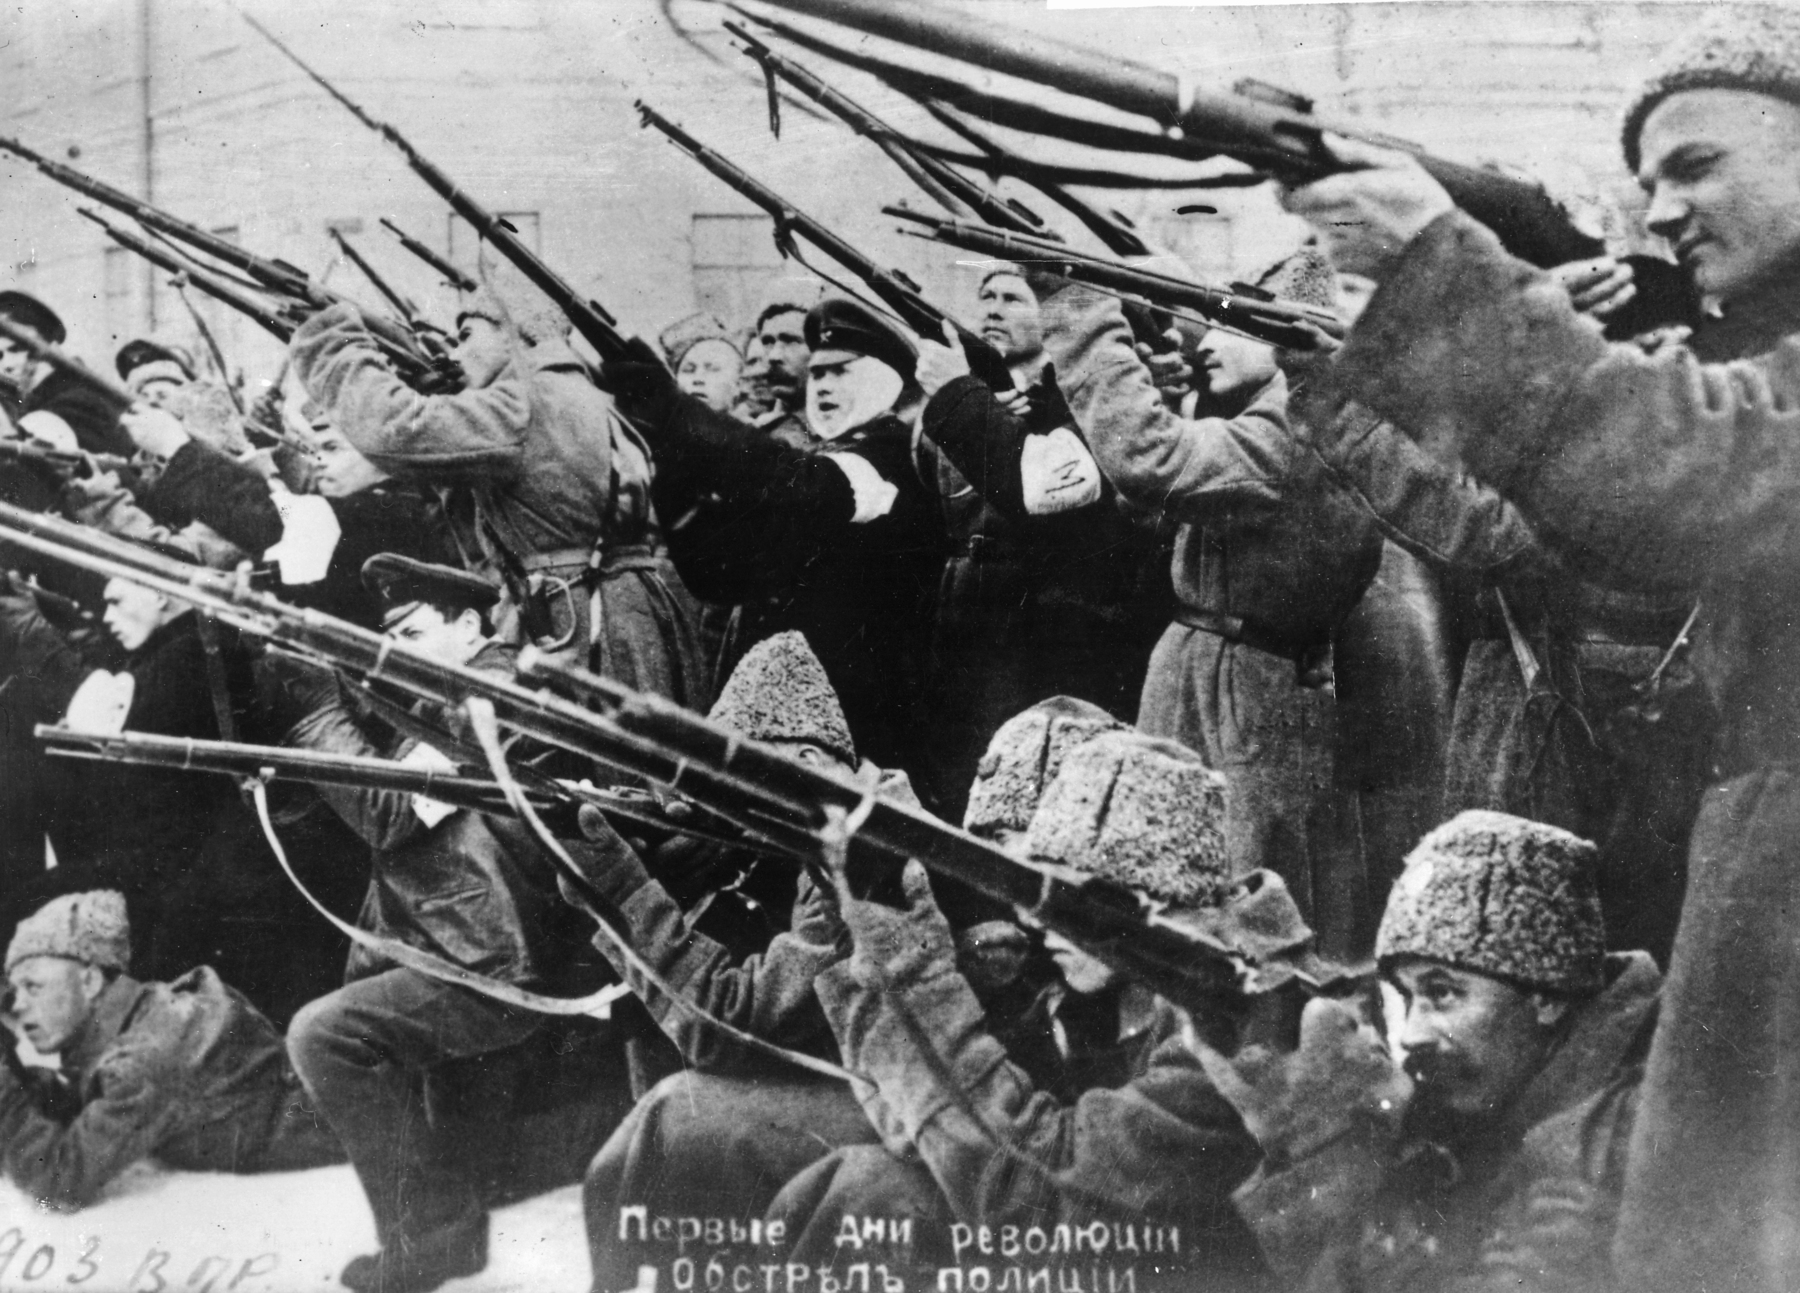 Fotografia em preto e branco. Homens de sobretudo agrupados empunhando  armas de fogo de cano longo para a mesma direção.